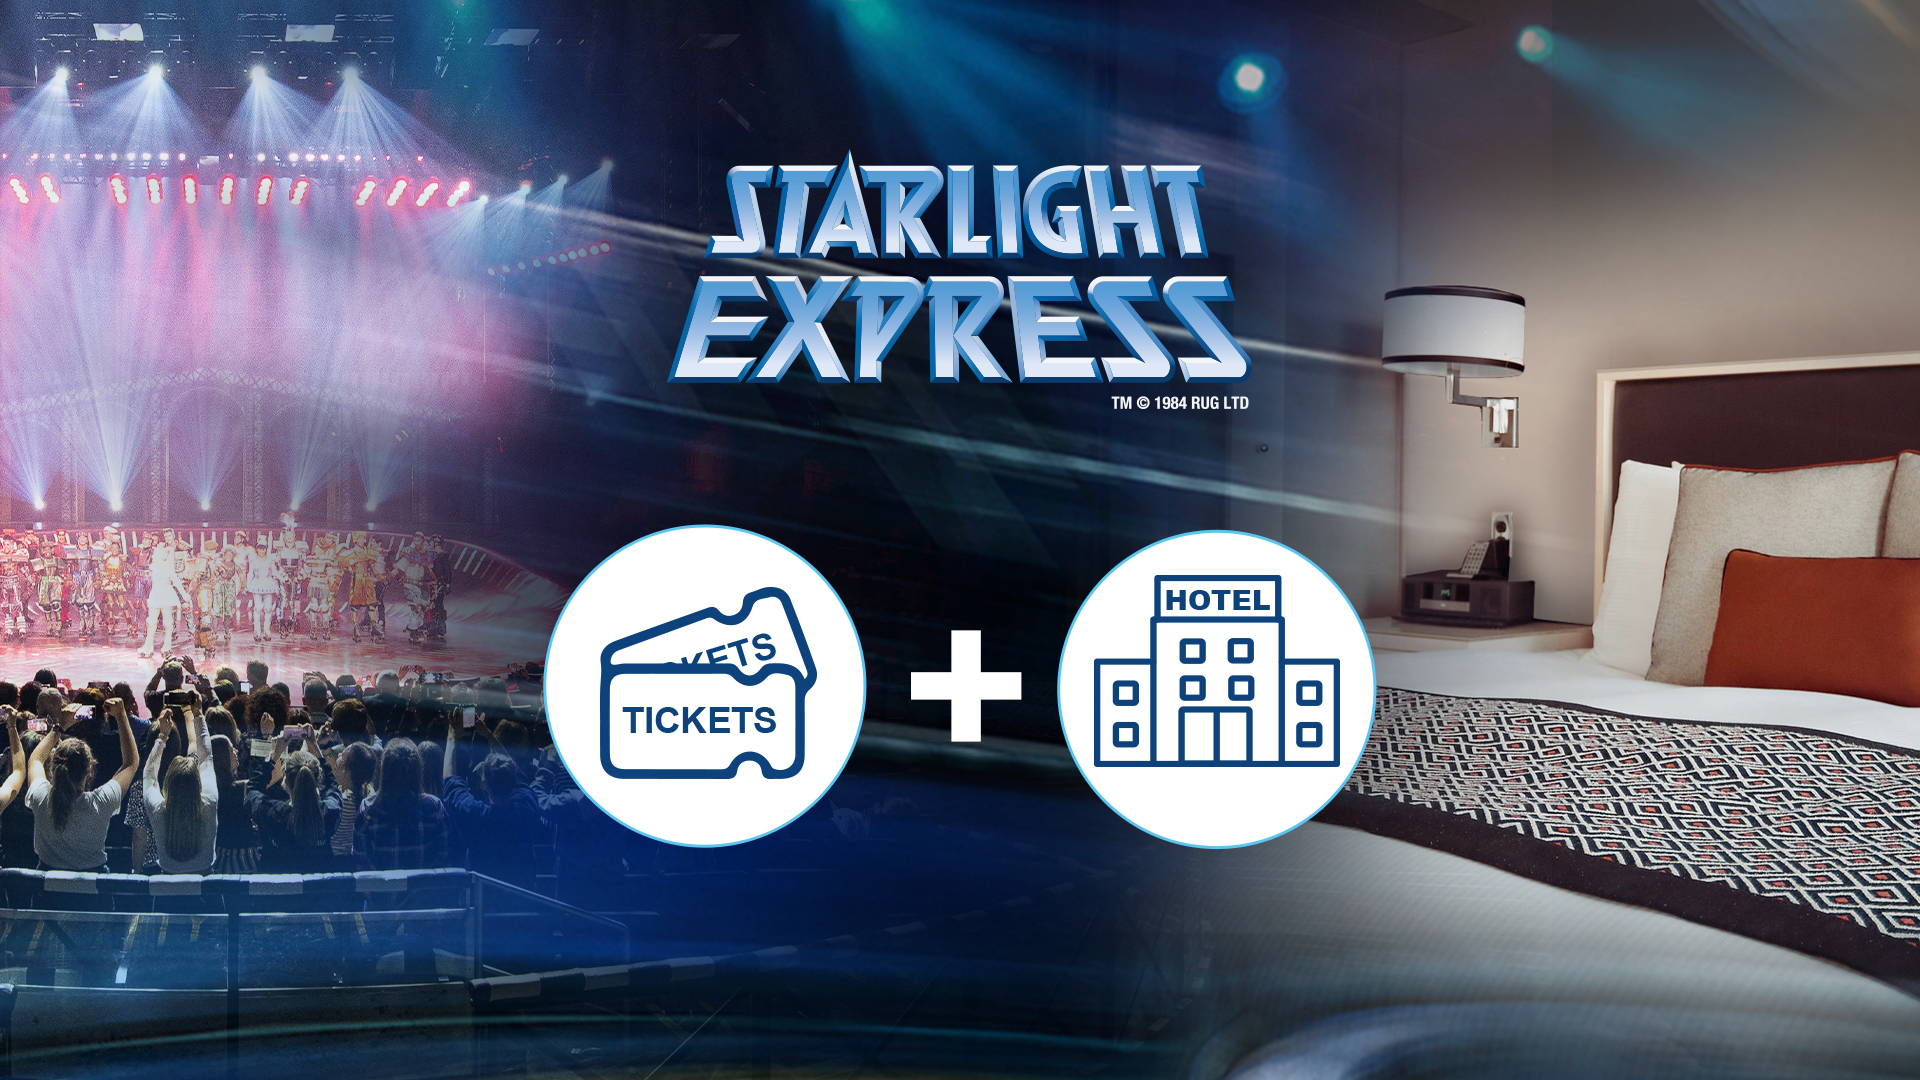 Expresslösung. d&b Soundscape bringt Starlight Express auf Kurs.